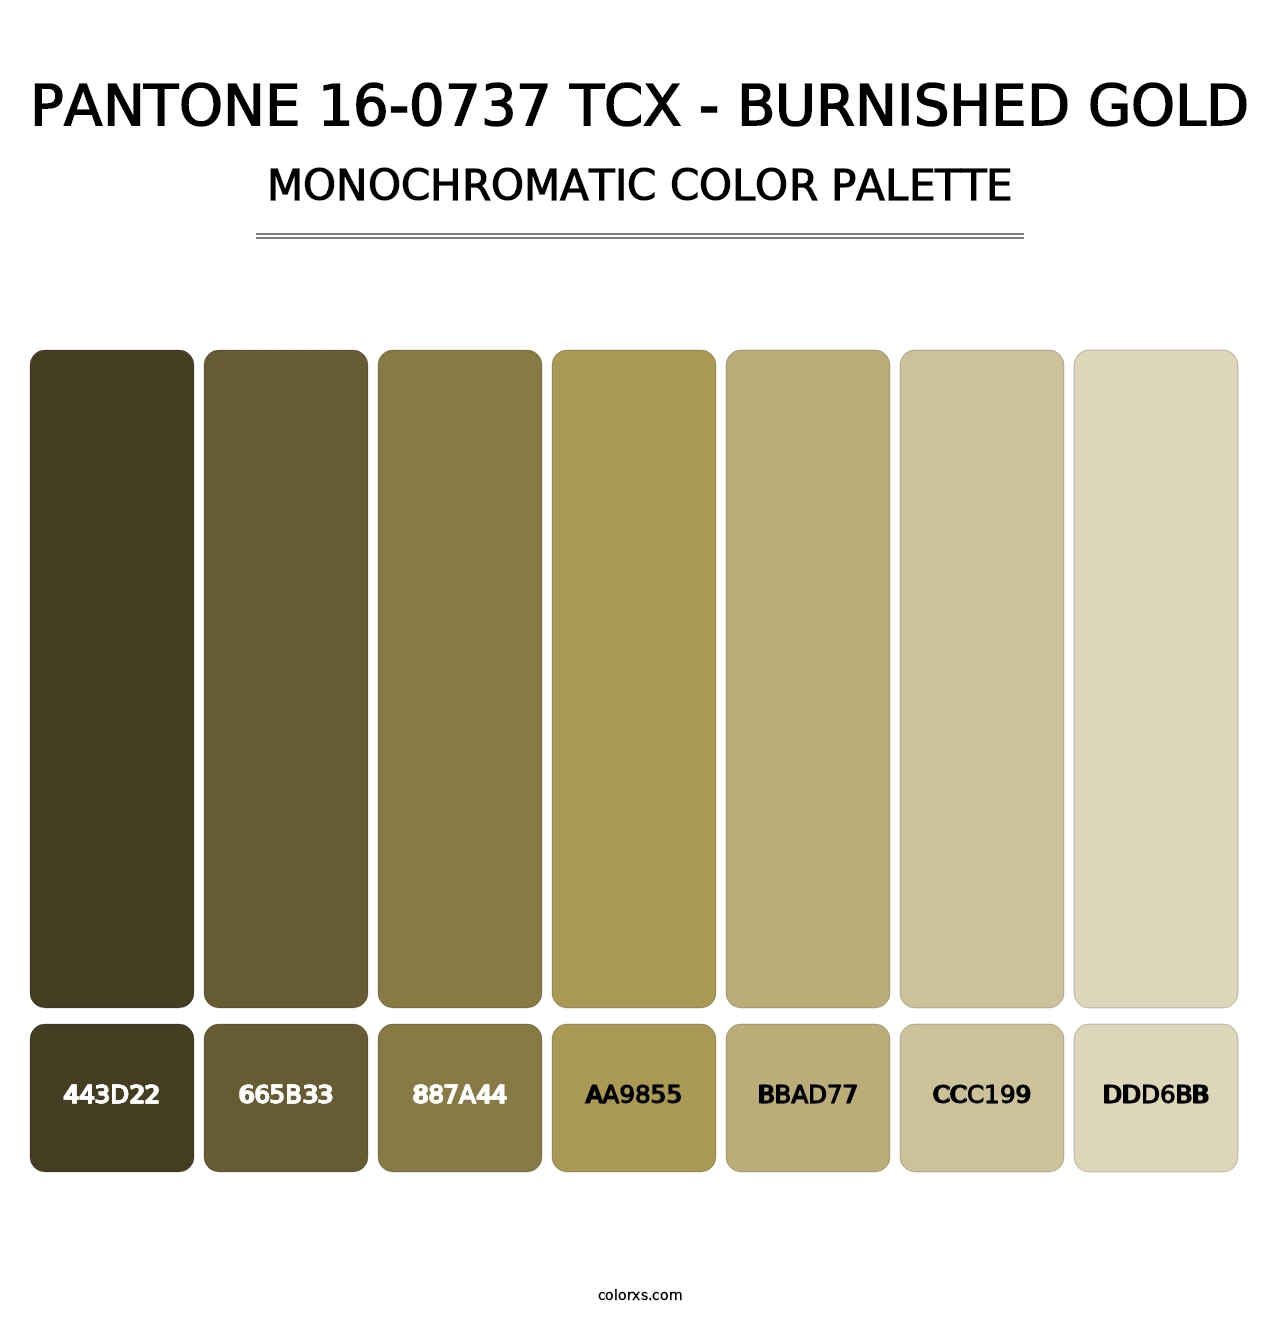 PANTONE 16-0737 TCX - Burnished Gold - Monochromatic Color Palette